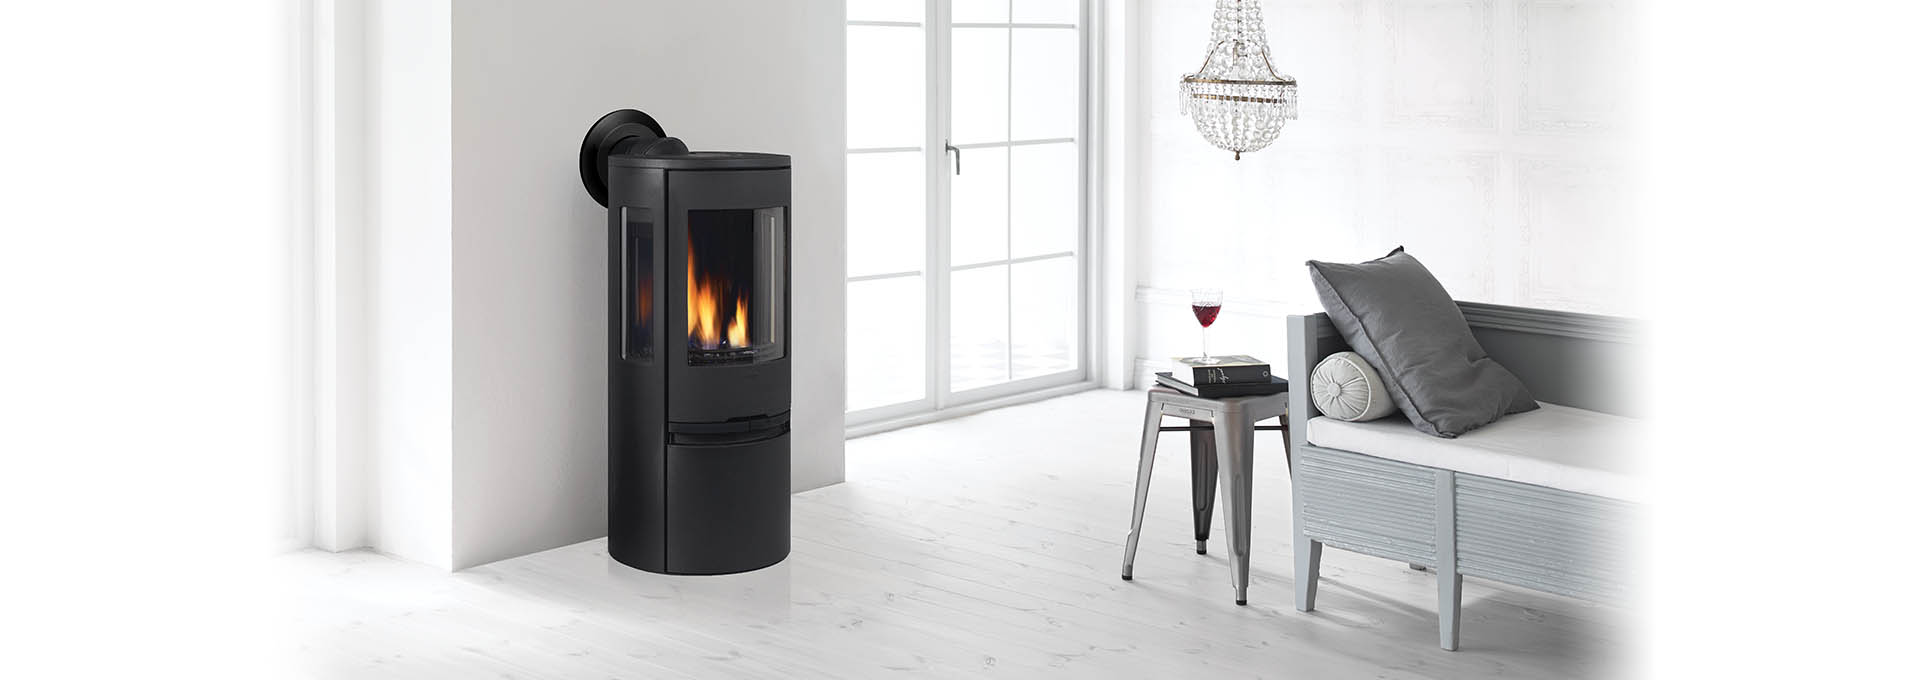 rc500e-modern-freestanding-gas-stove-regency